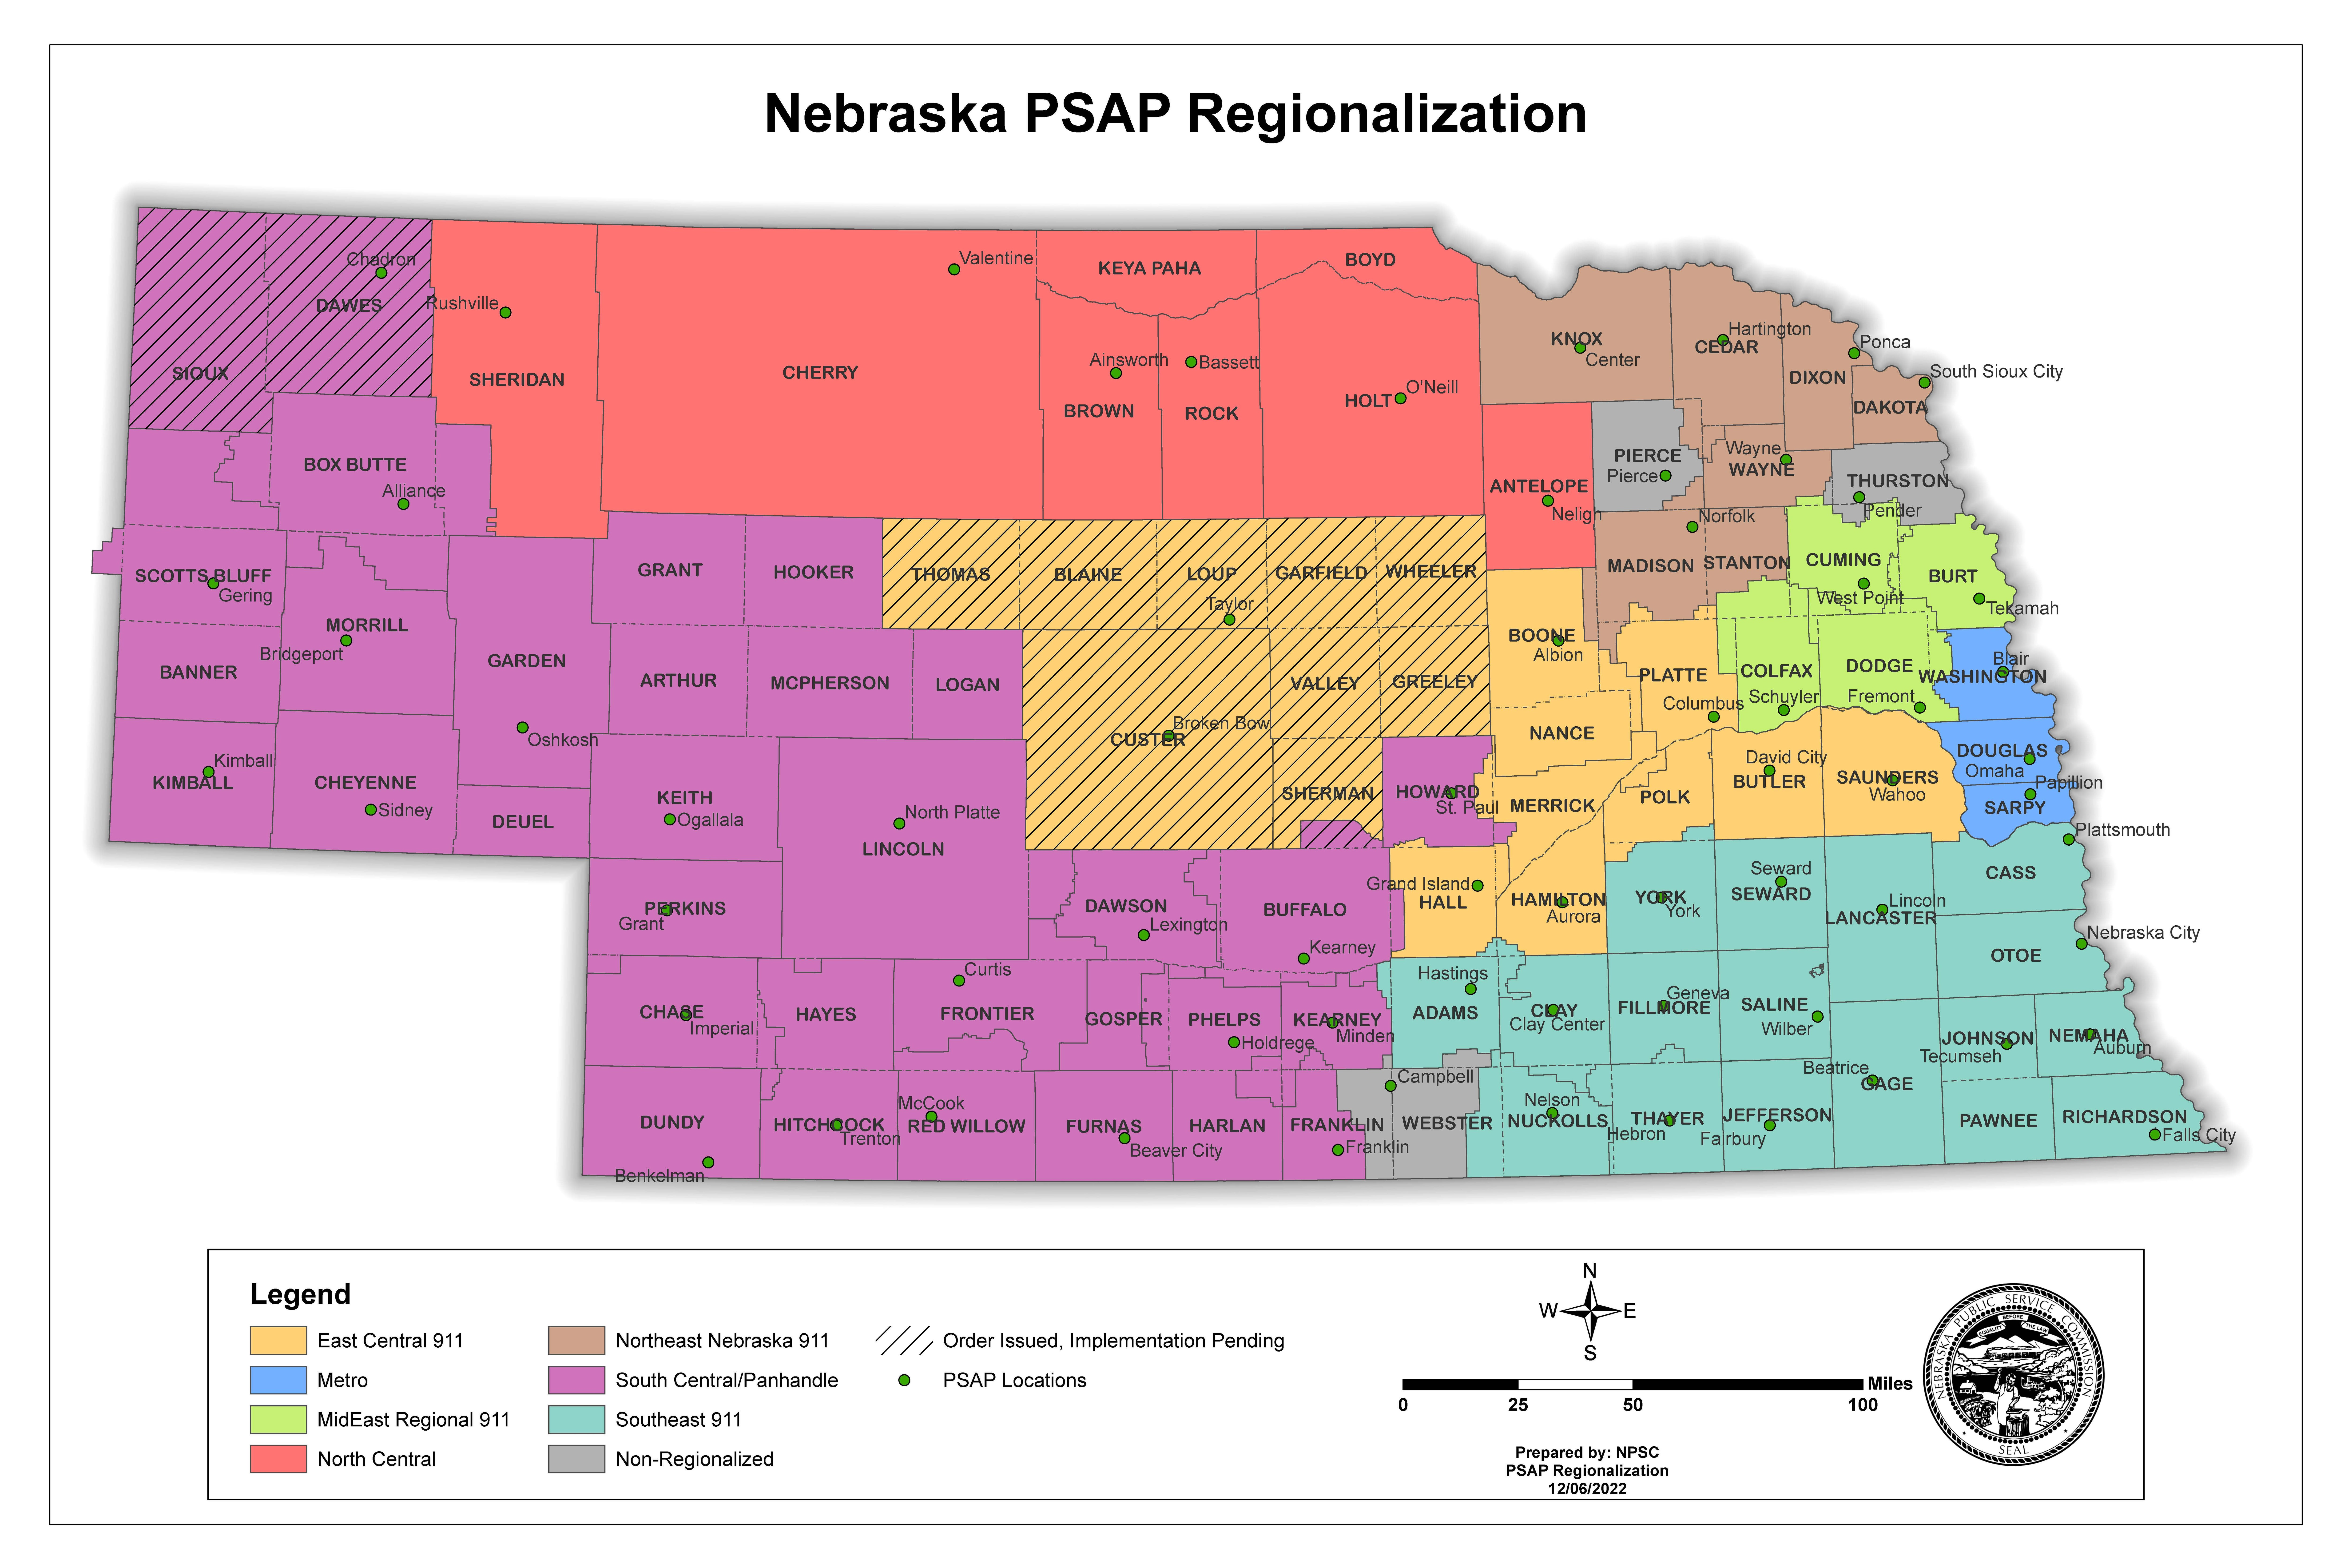 PSAP Regionalization Map